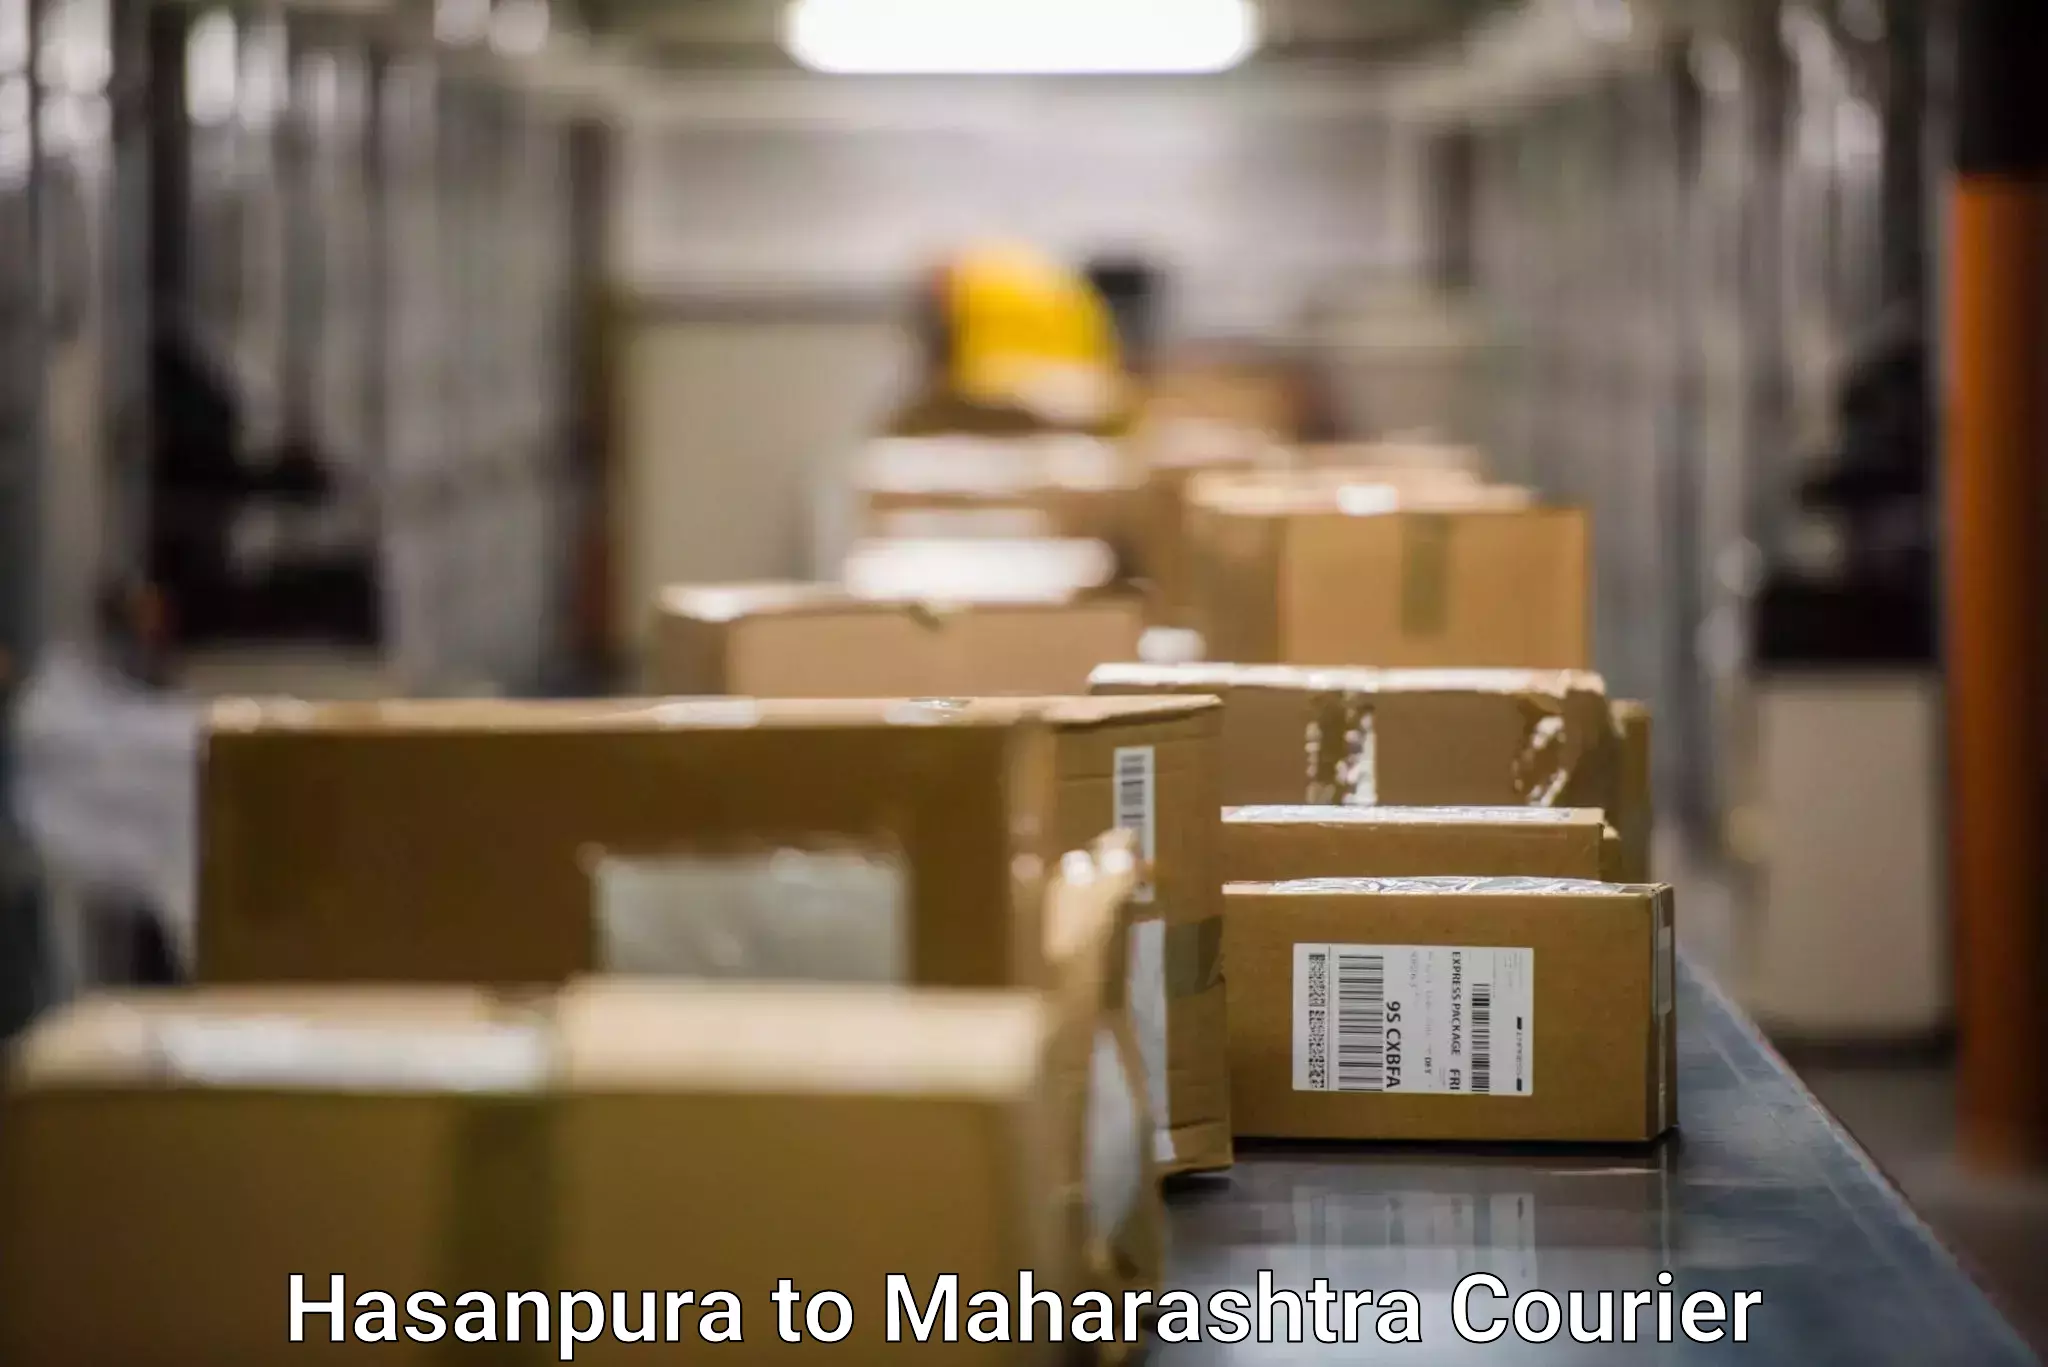 Expedited shipping methods Hasanpura to Mumbai University